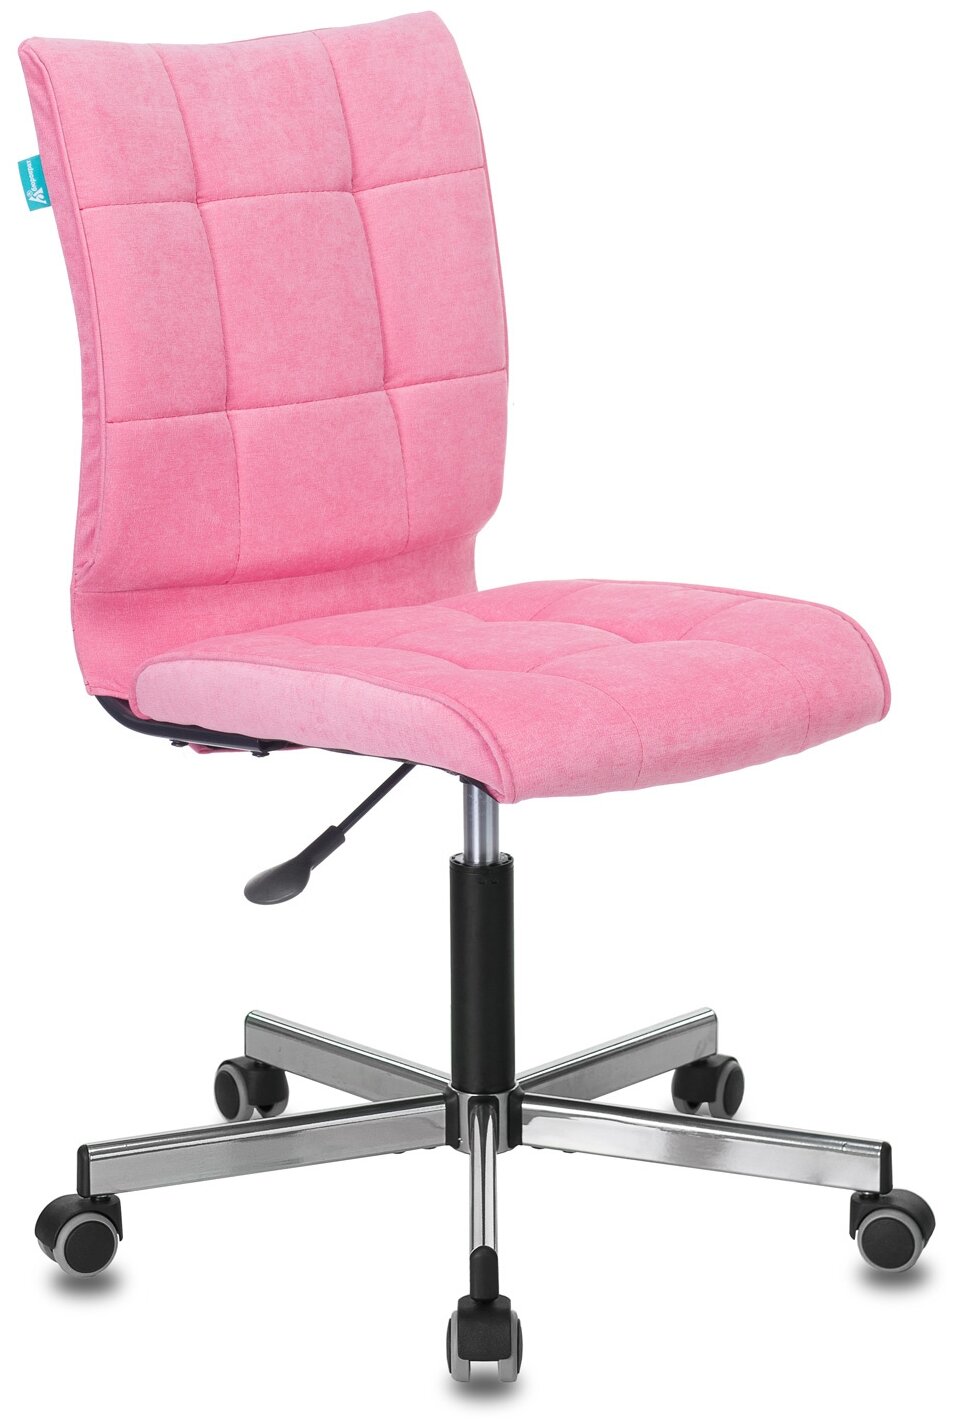 Кресло CH-330M розовый Velvet 36 крестовина металл хром / Офисное кресло для оператора, персонала, сотрудника, для дома